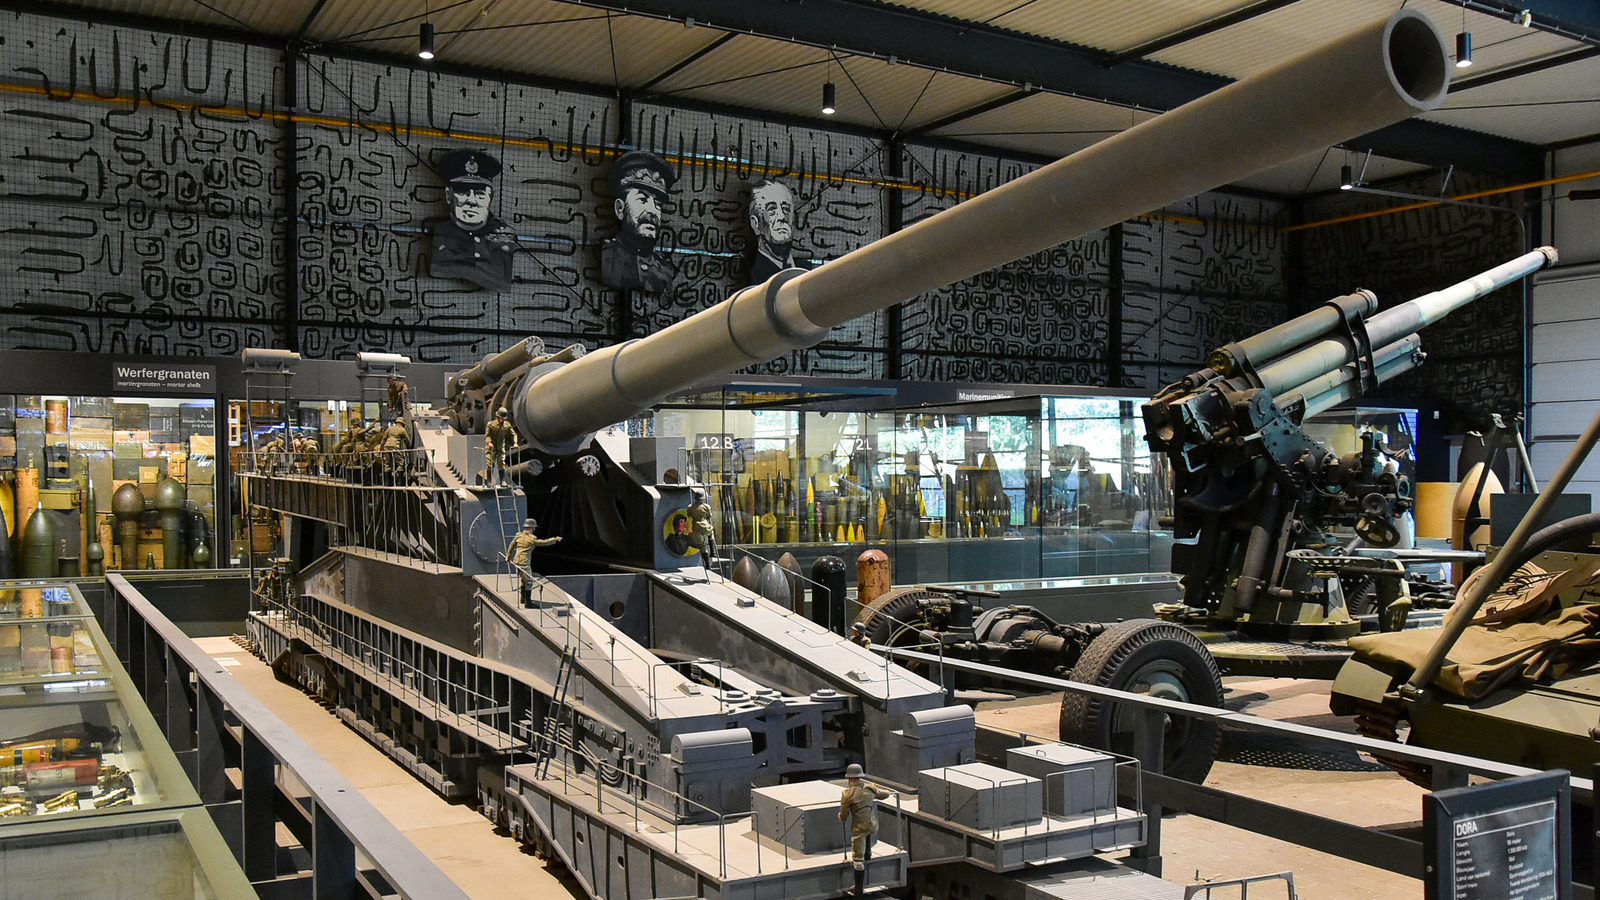 بزرگترین تفنگی که تا به حال در جنگ استفاده شده است: شوورر گوستاو آلمانی